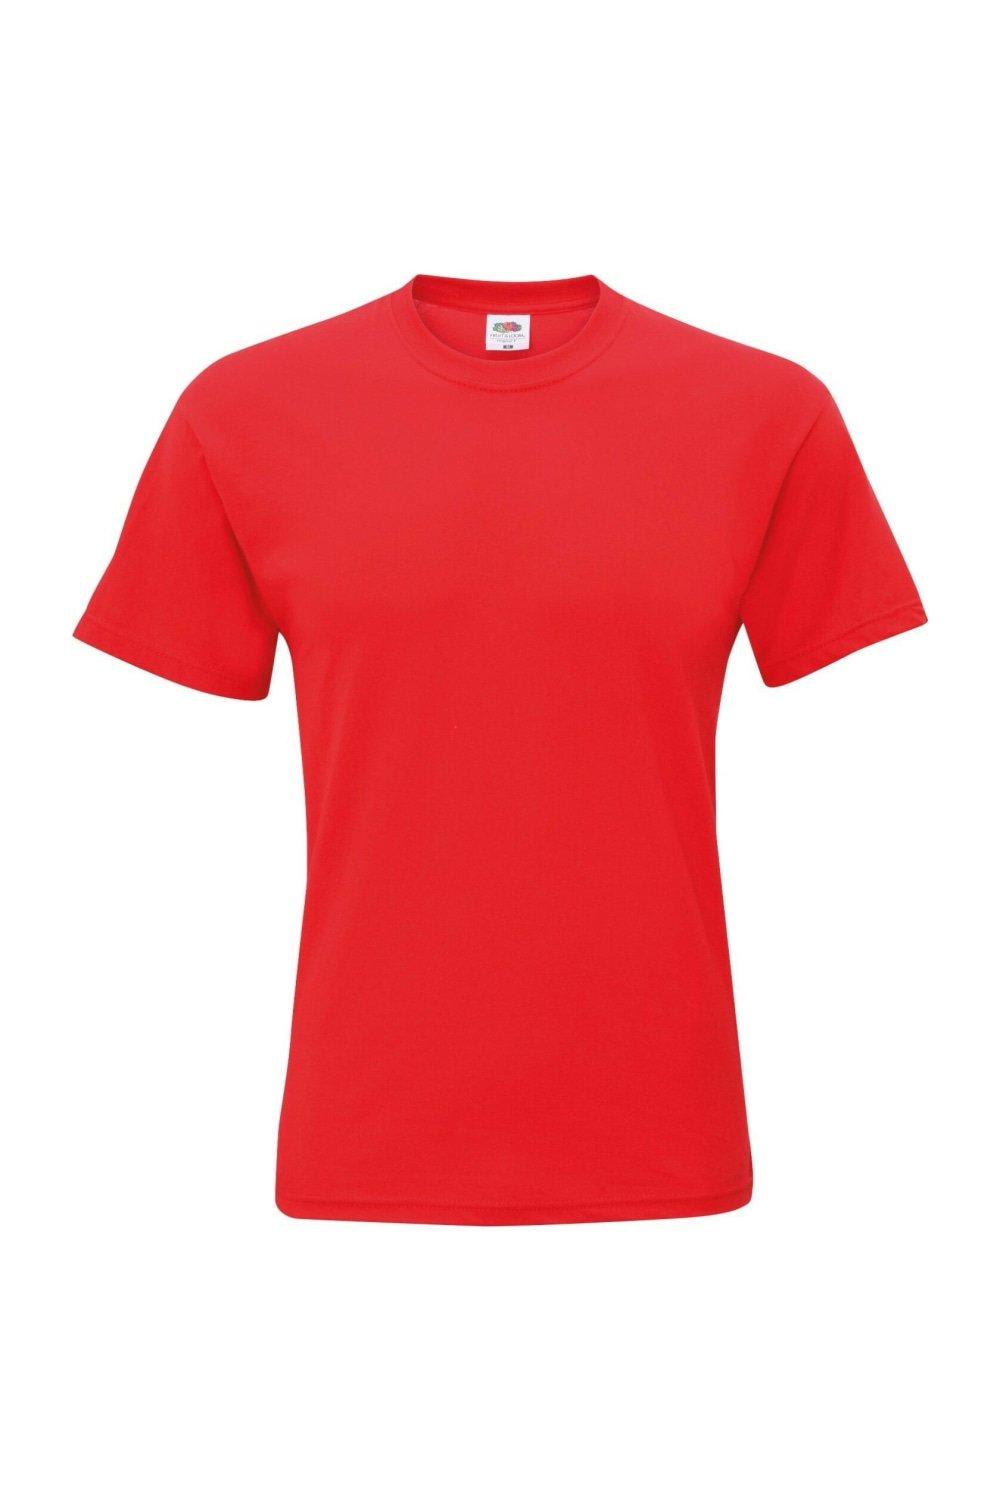 Оригинальная футболка с коротким рукавом Fruit of the Loom, красный